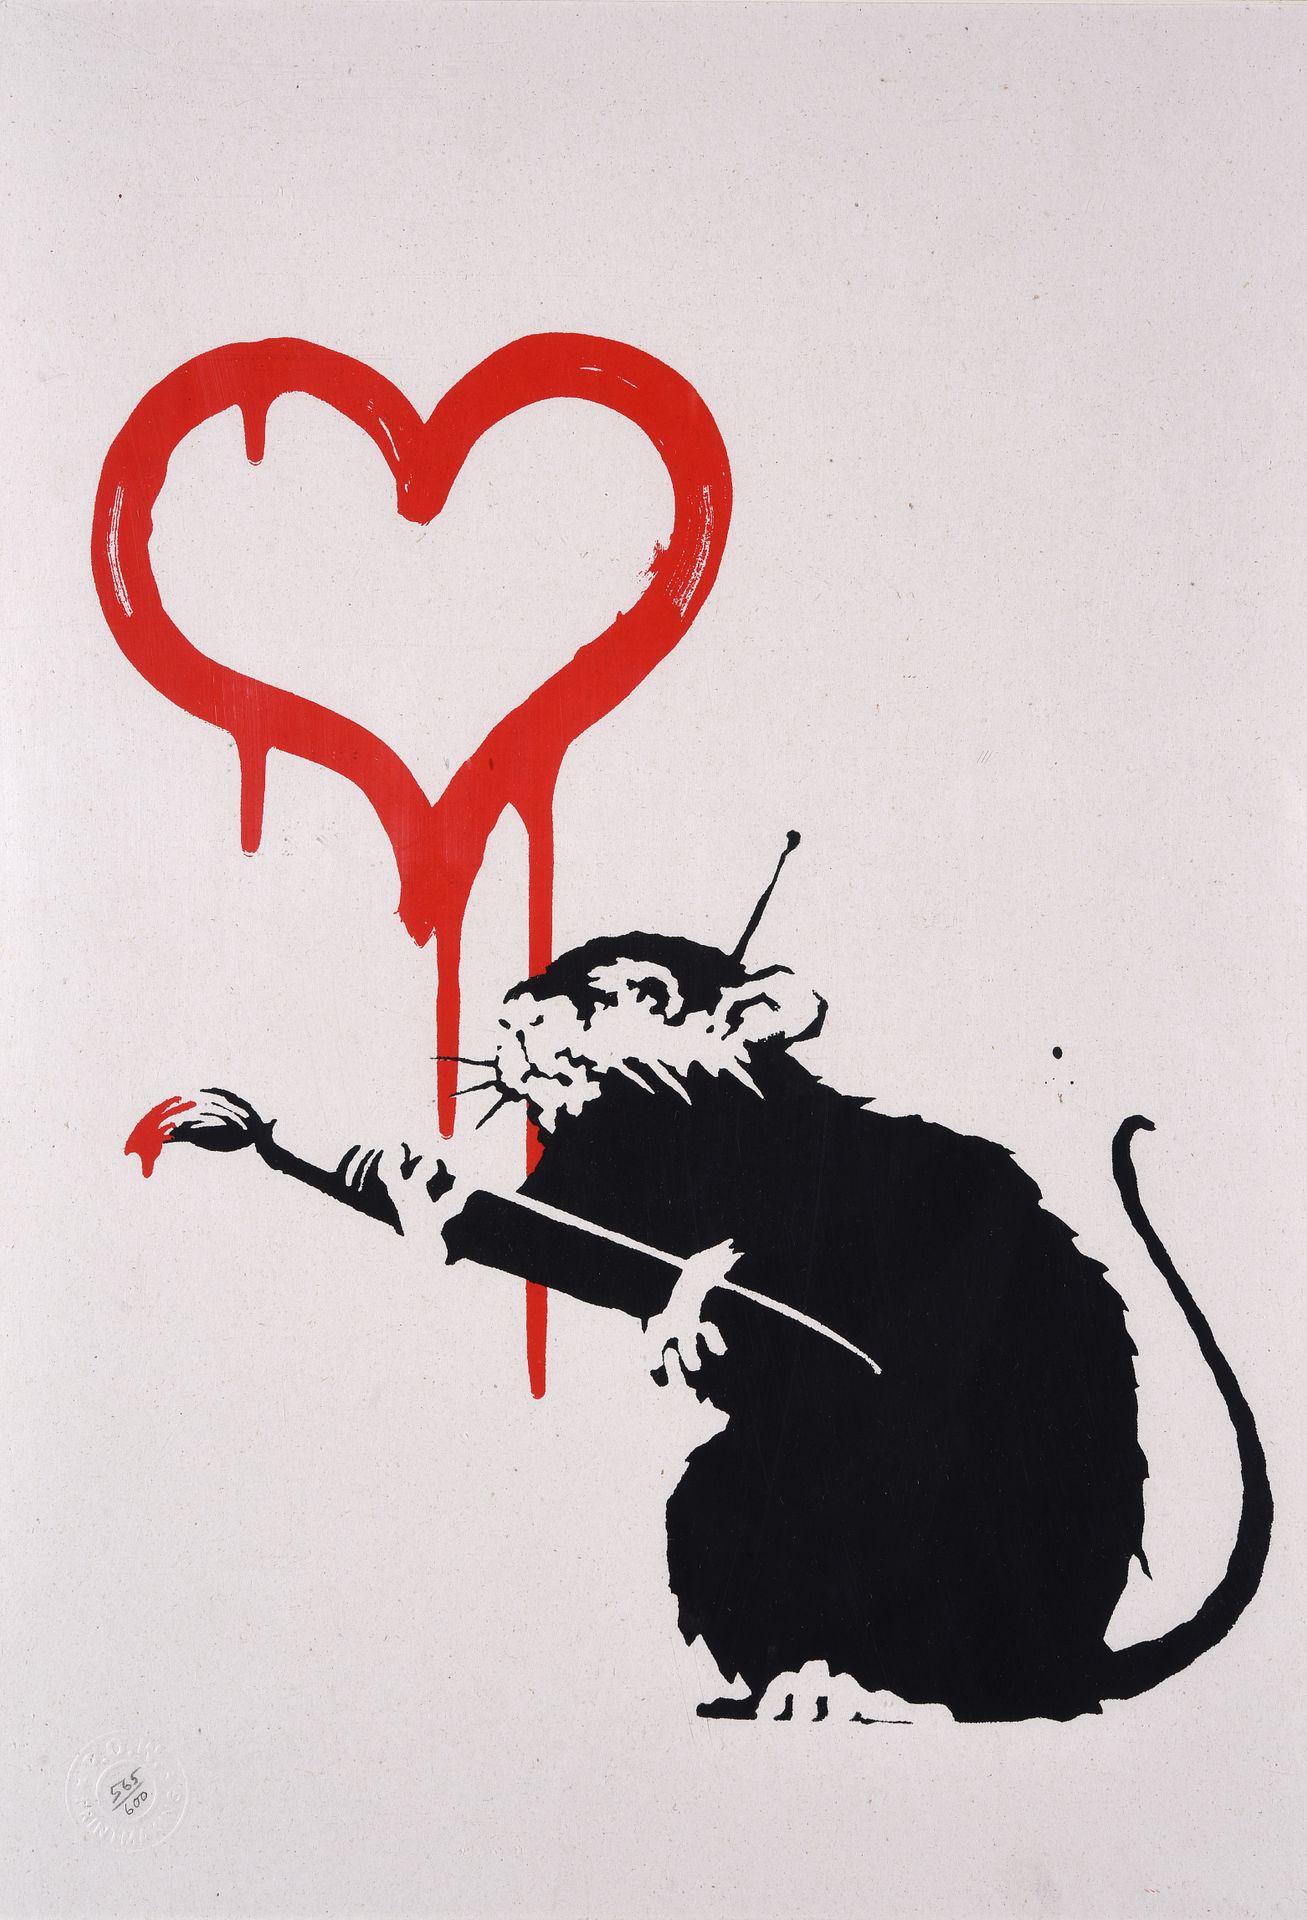 Null 班克西 (1974年出生)

爱鼠, 2004

彩色丝印

墙上的图片版，伦敦，有他们的干章

左下角有铅笔编号565/600

50 x 35 c&hellip;